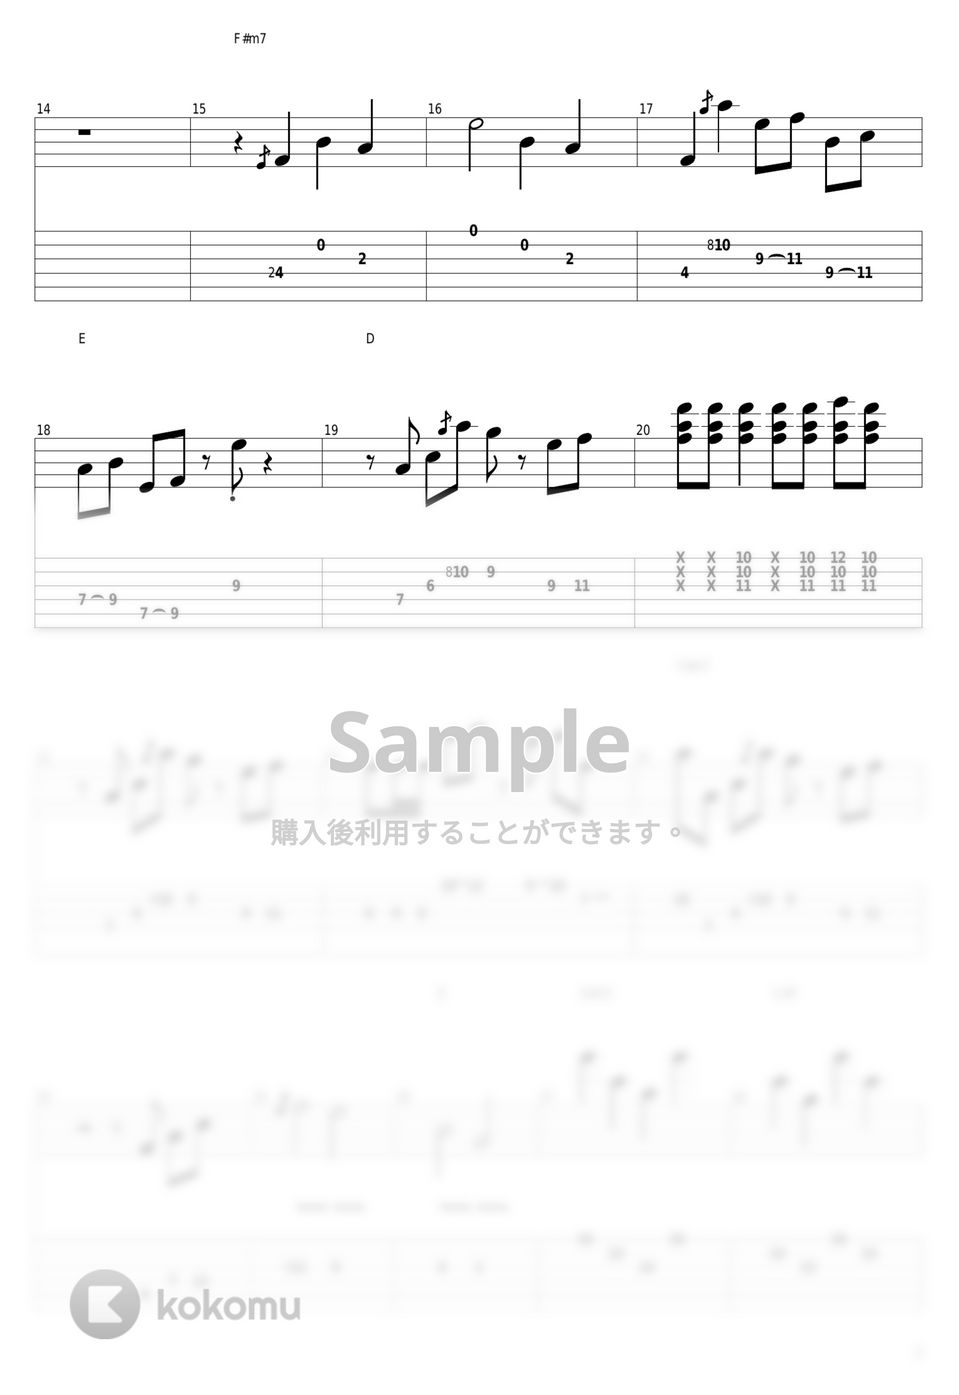 結束バンド - ギターと孤独と蒼い惑星 by guitar cover with tab